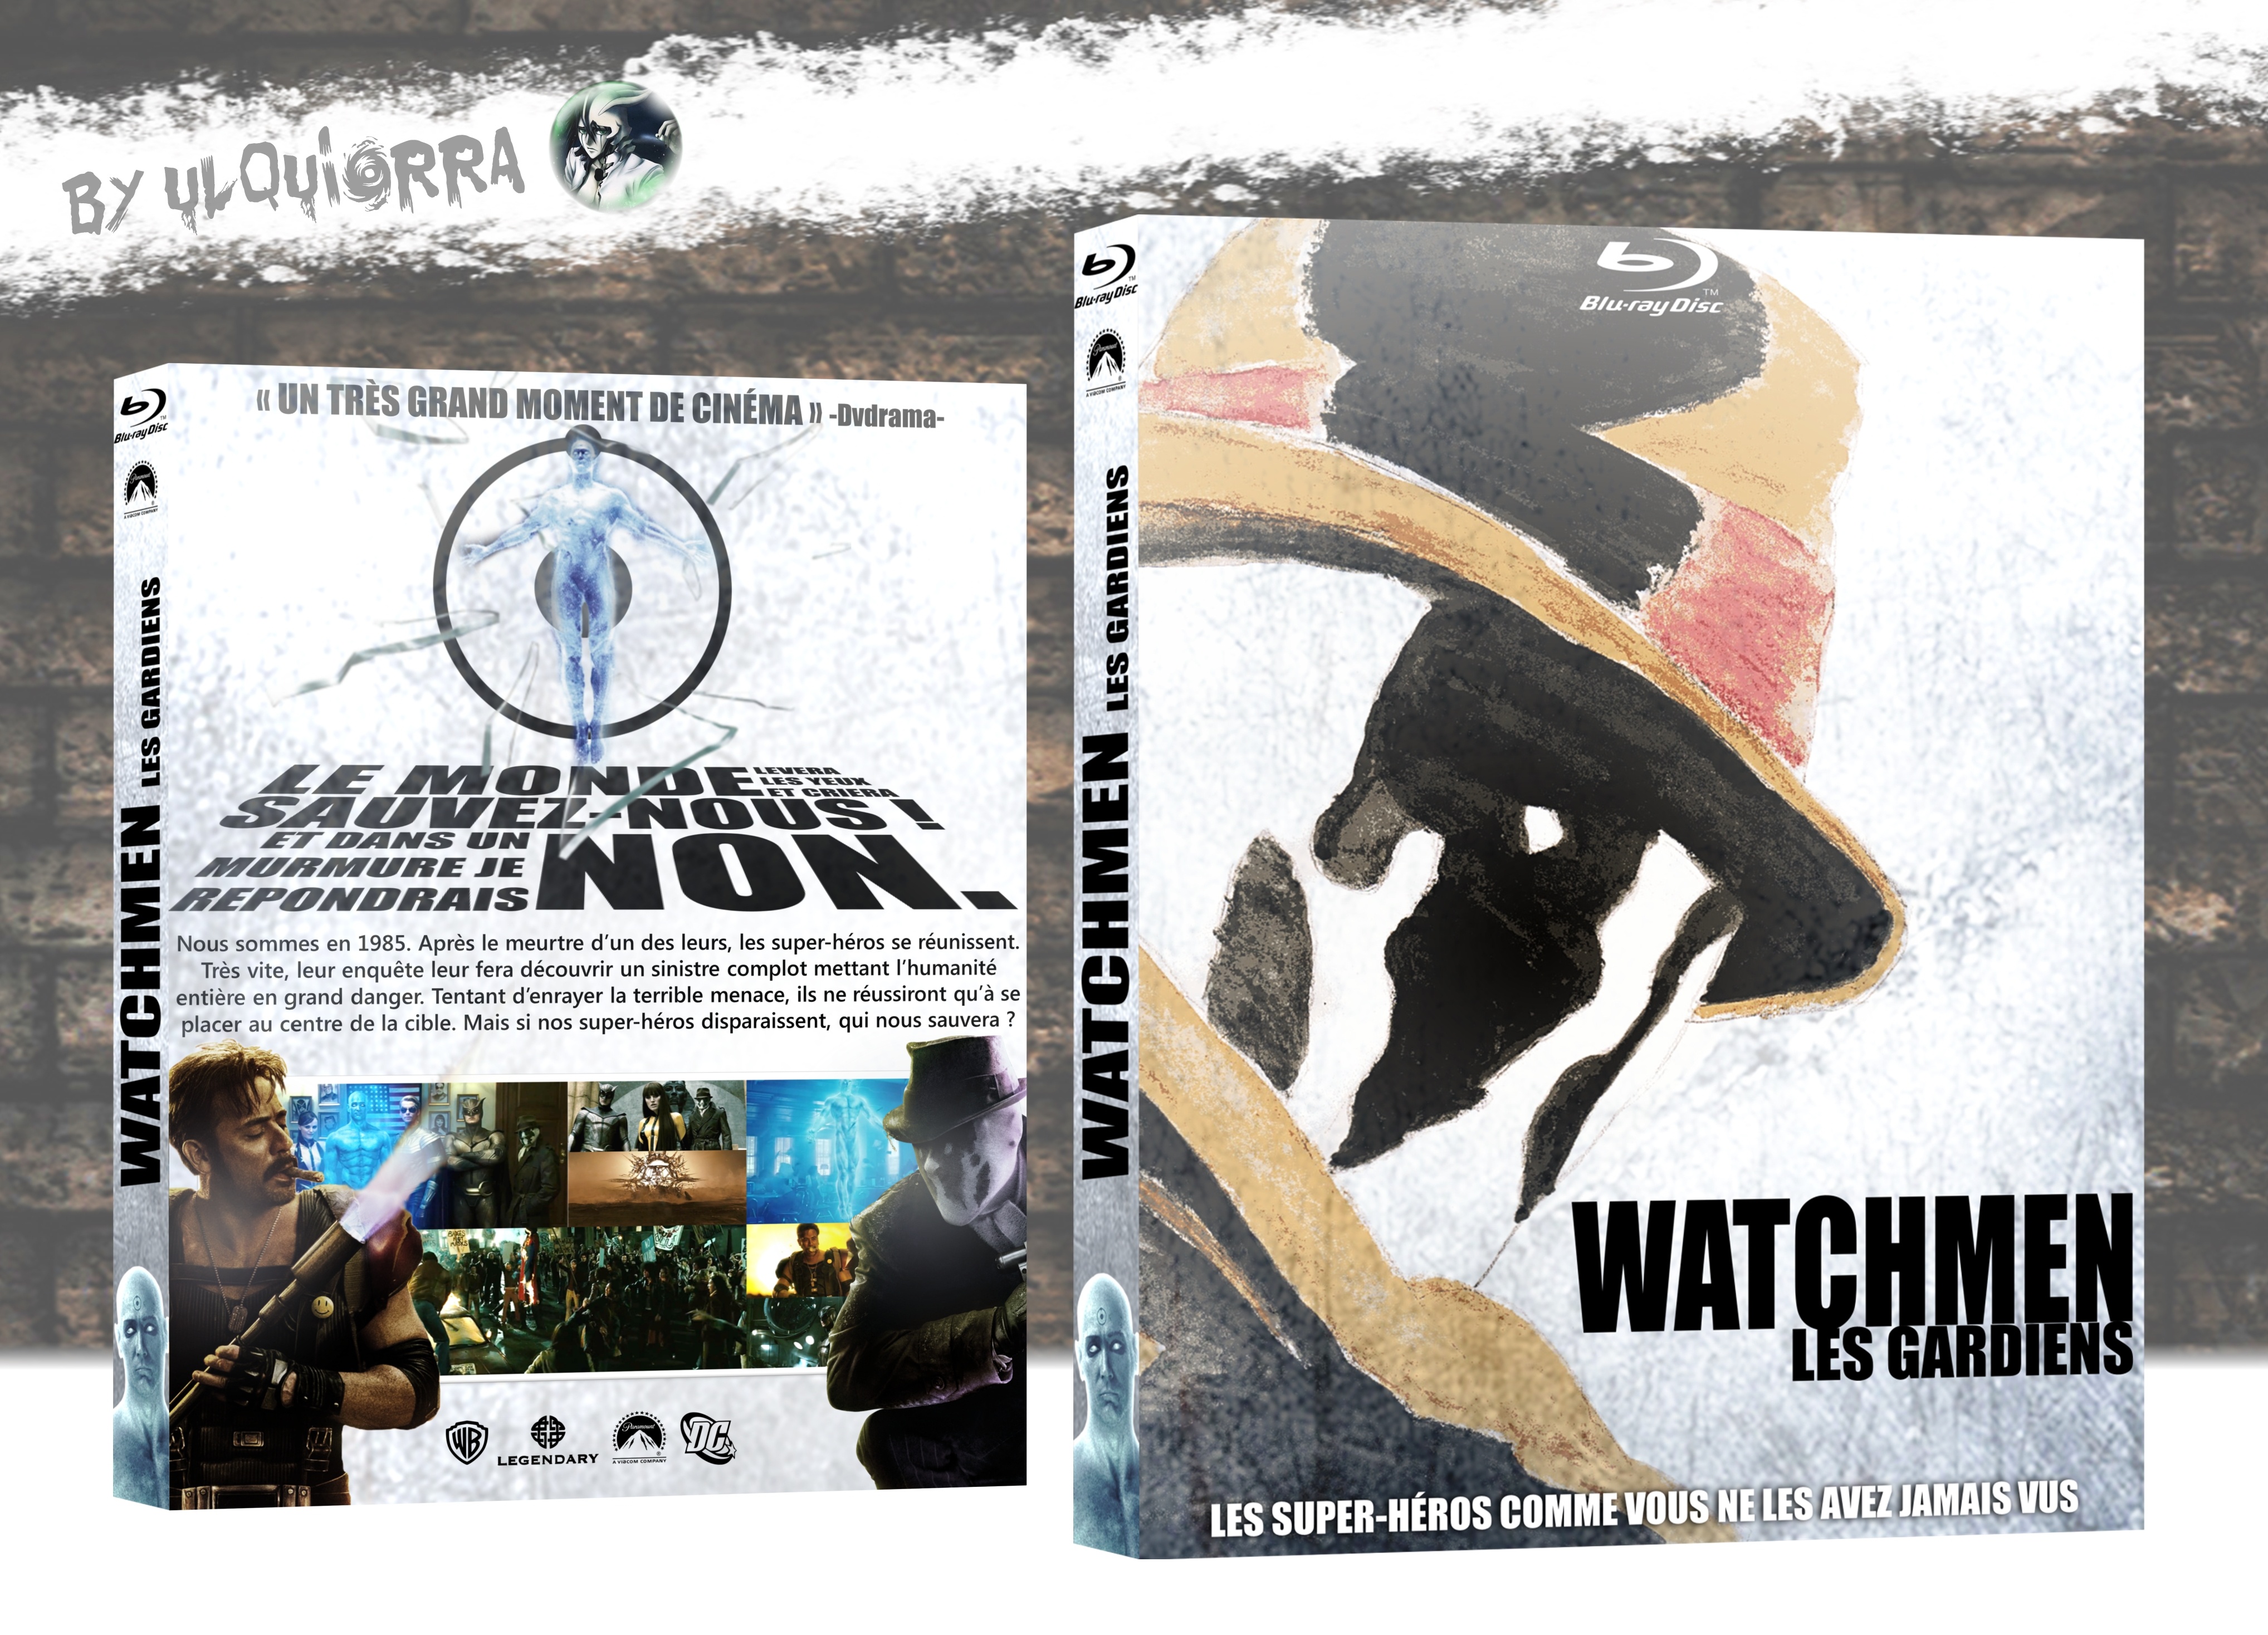 Watchmen: les gardiens box cover